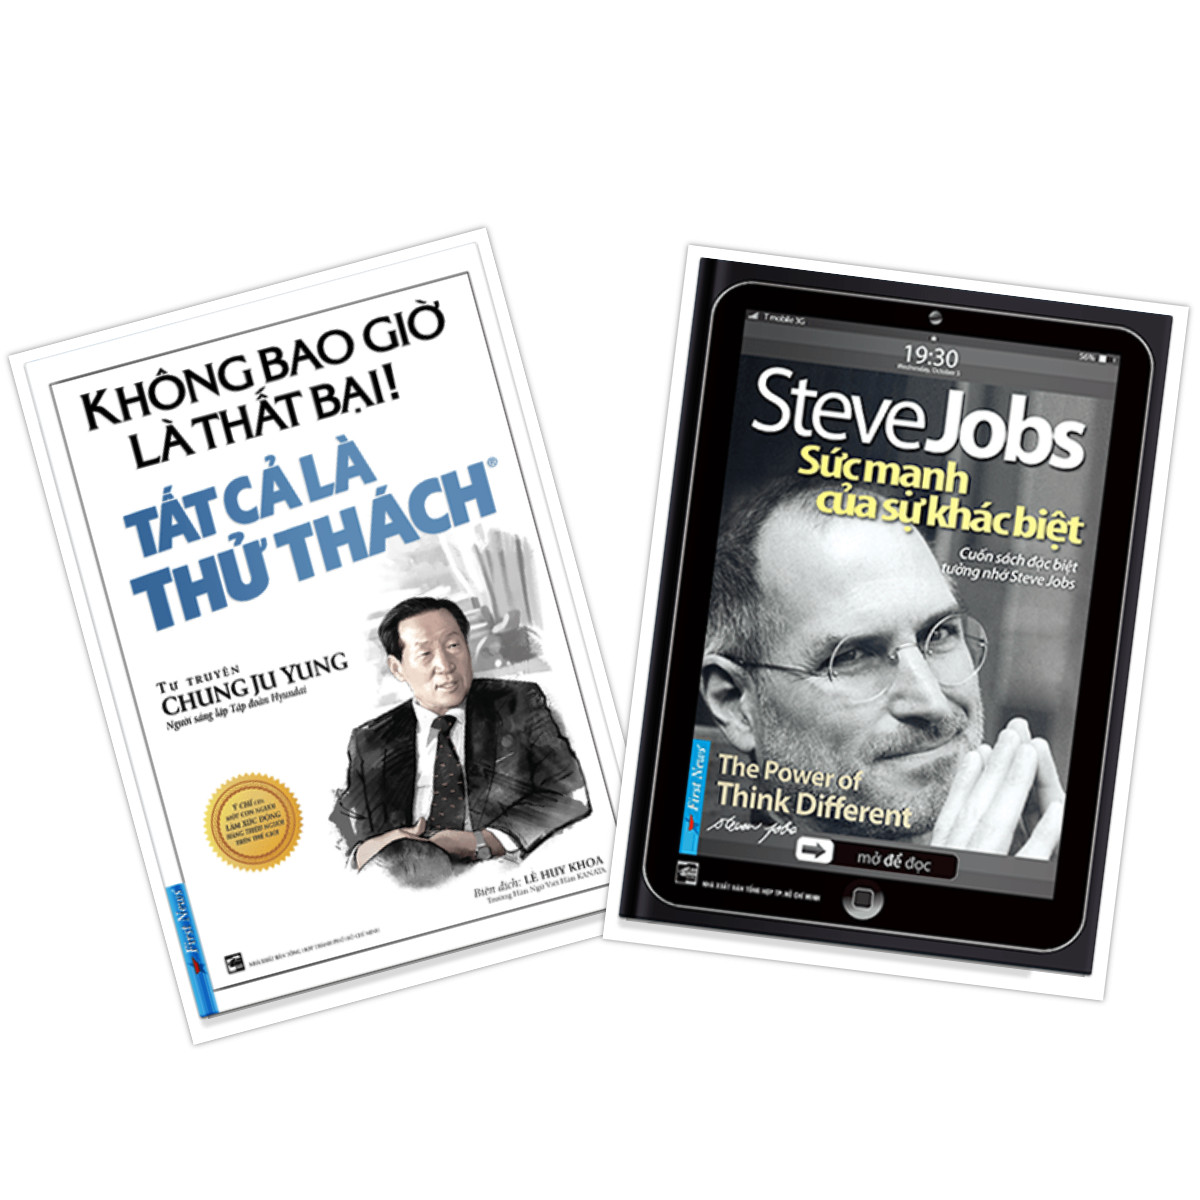 COMBO Sách Doanh Nhân 1 (Steve Jobs Sức mạnh của sự khác biệt + Tự truyện Chung ju Yung: Không bao giờ là thất bại! Tất cả là thử thách) Tái bản 2020